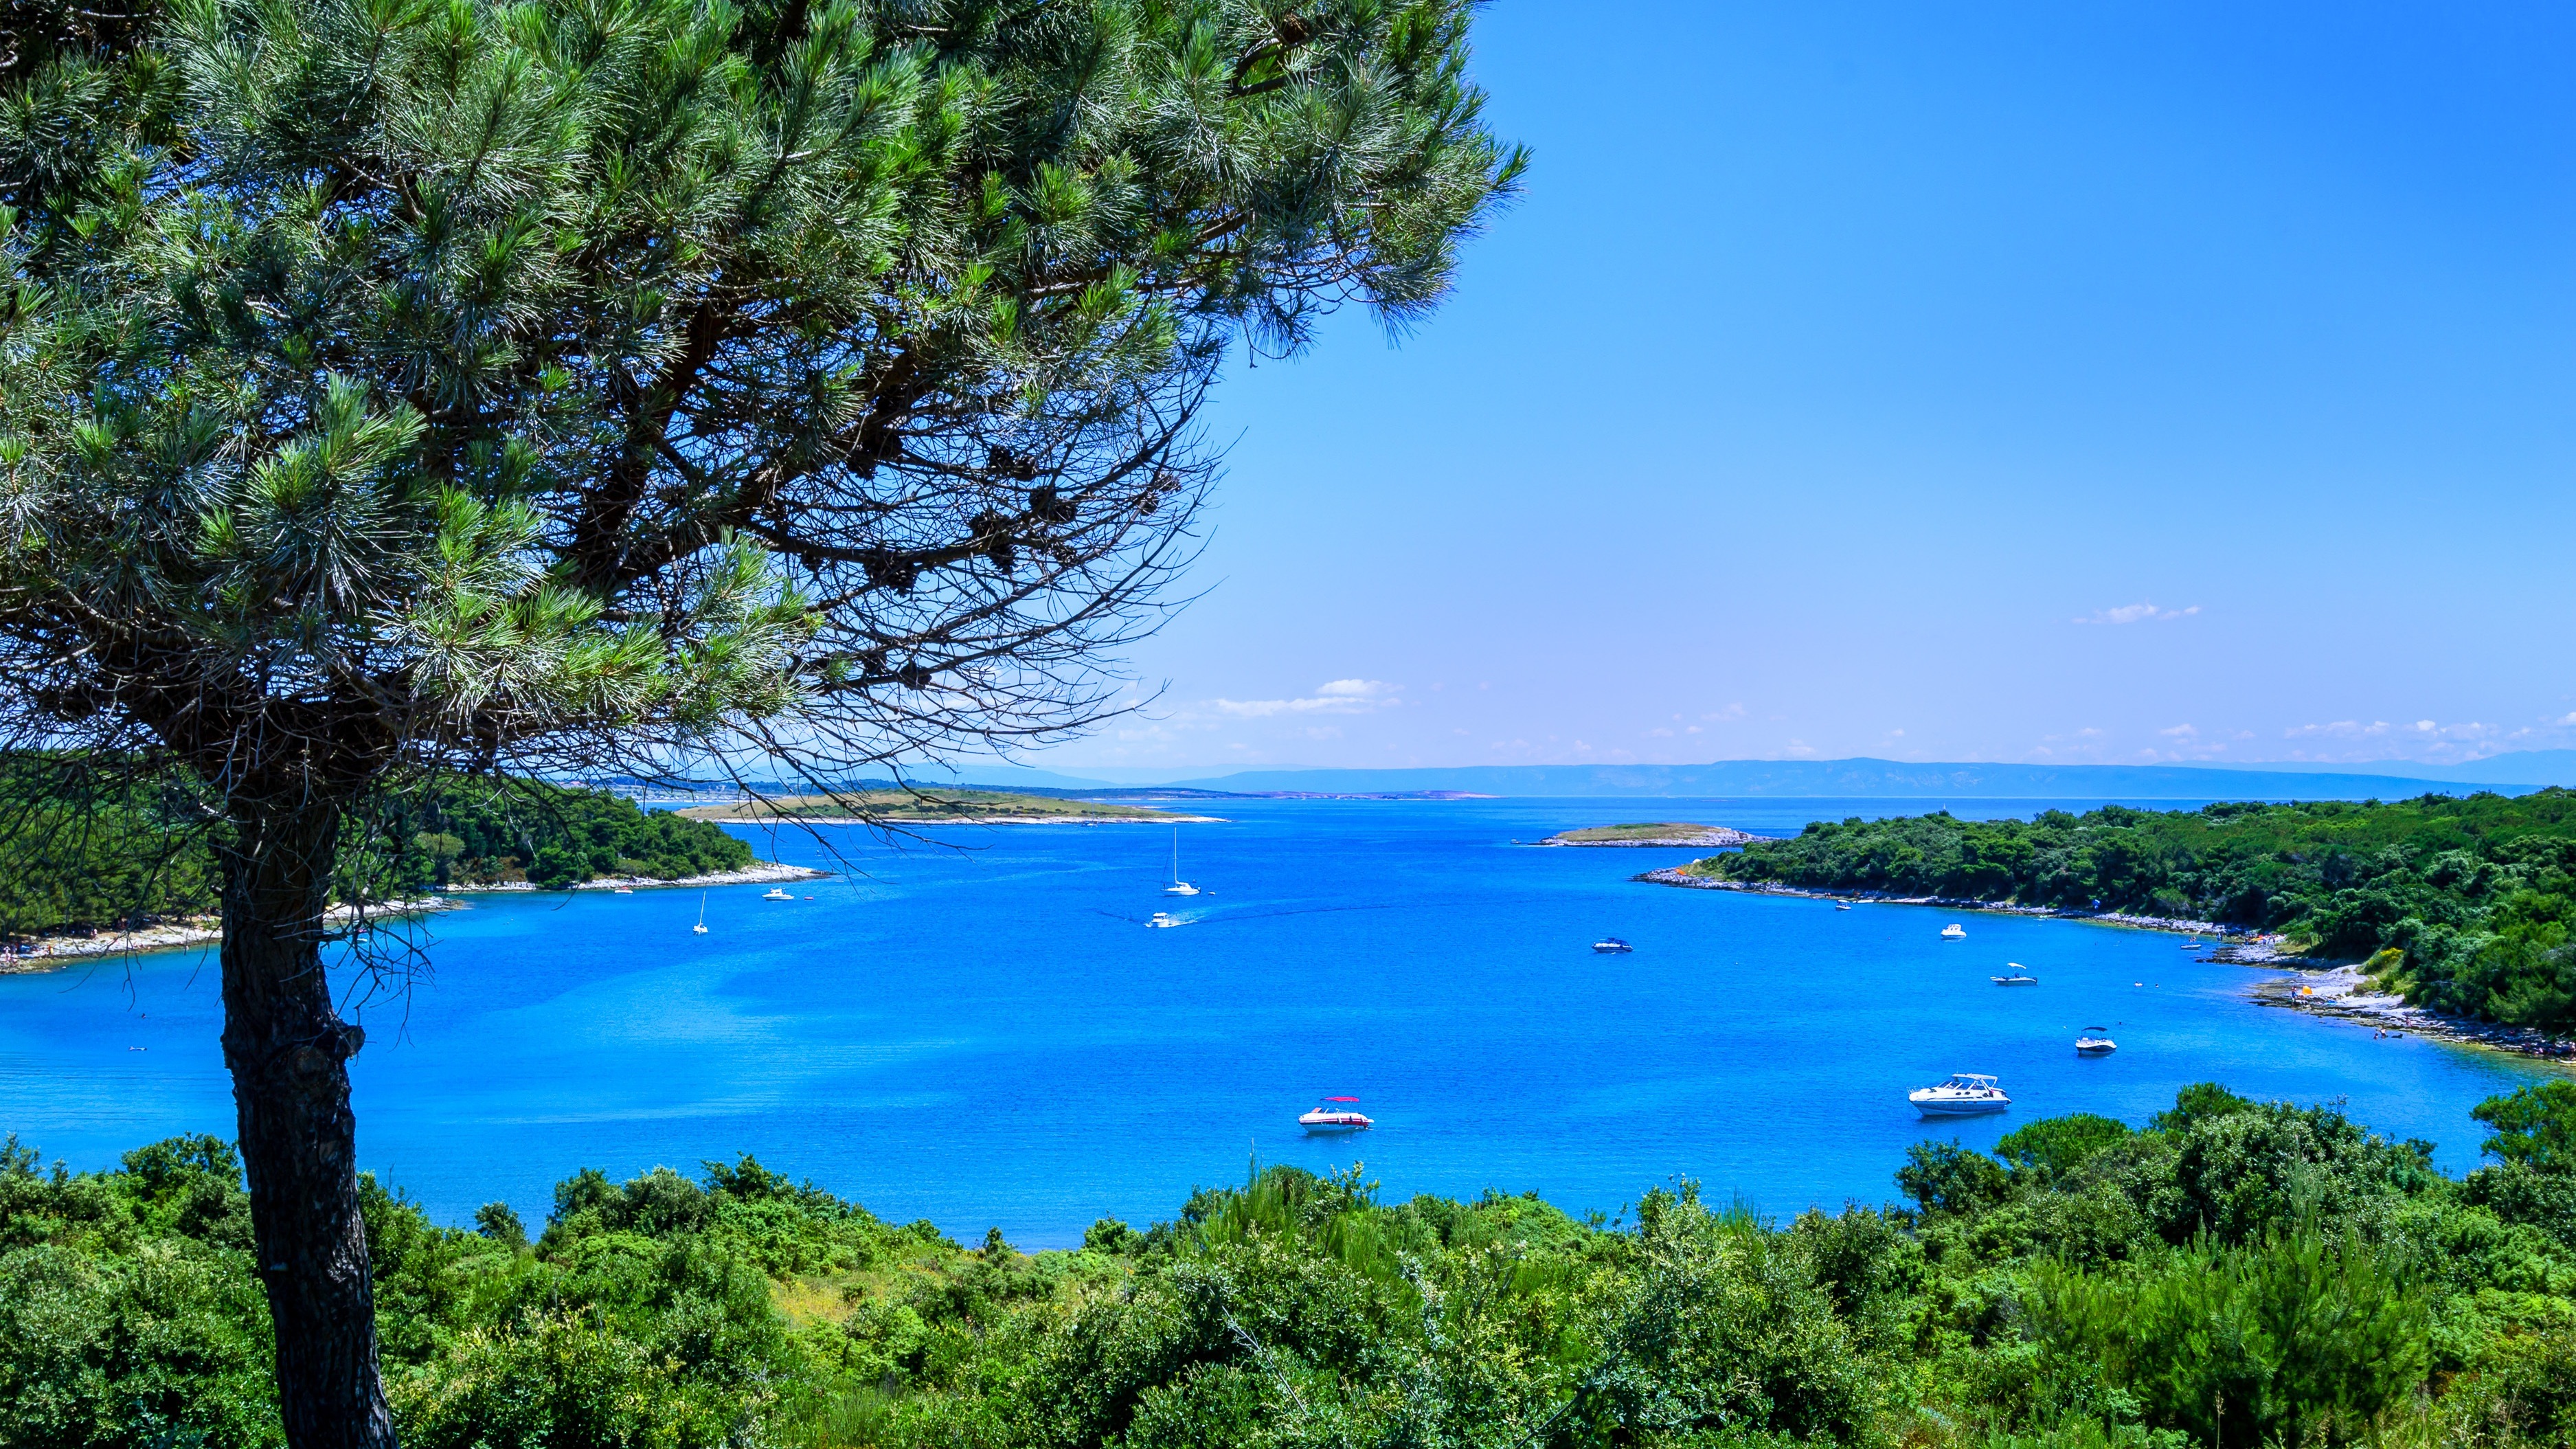 Willkommen an der Adria – Urlaub in Kroatien am Meer